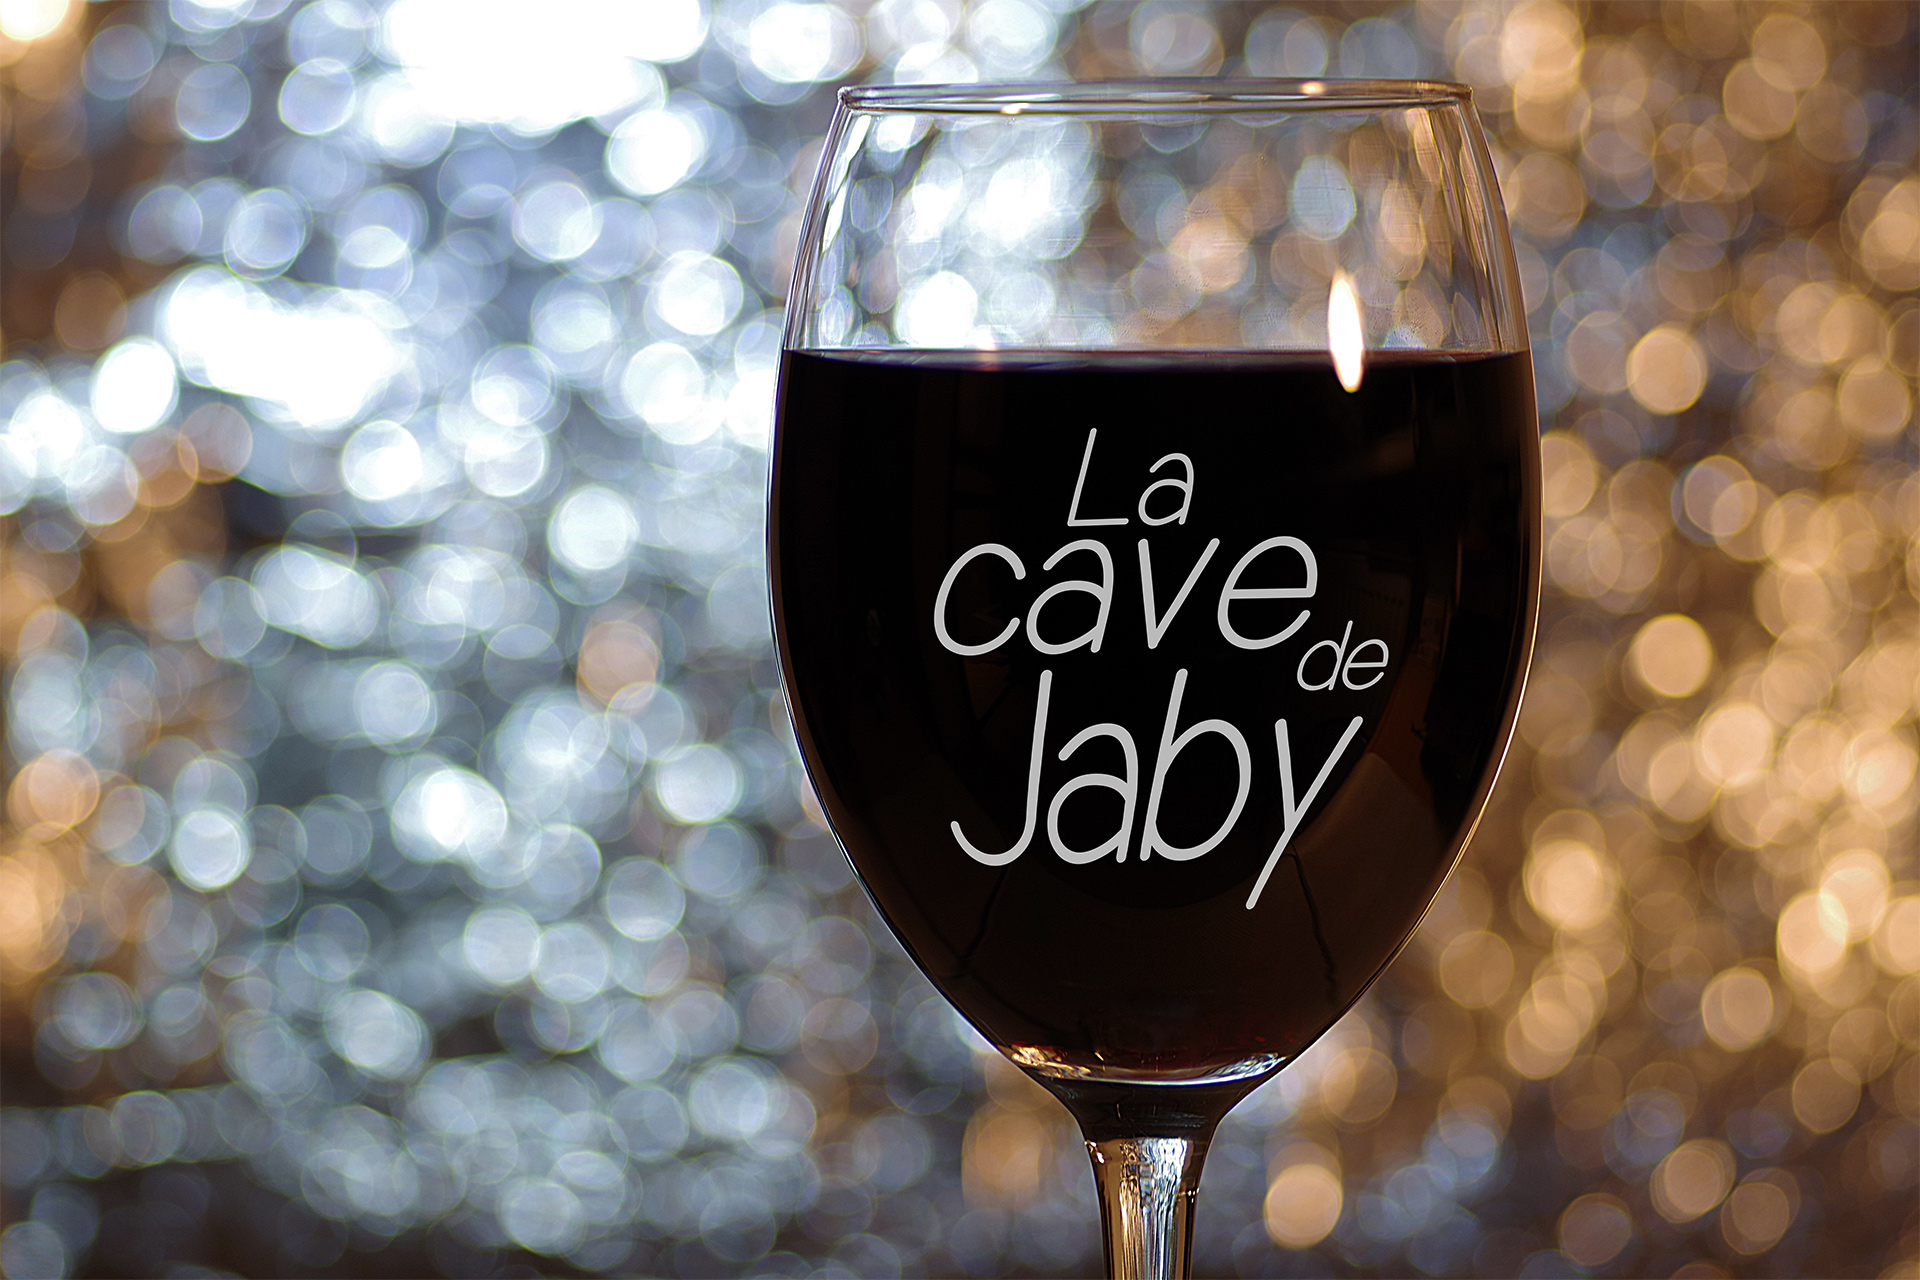 La-cave-de-jaby-02